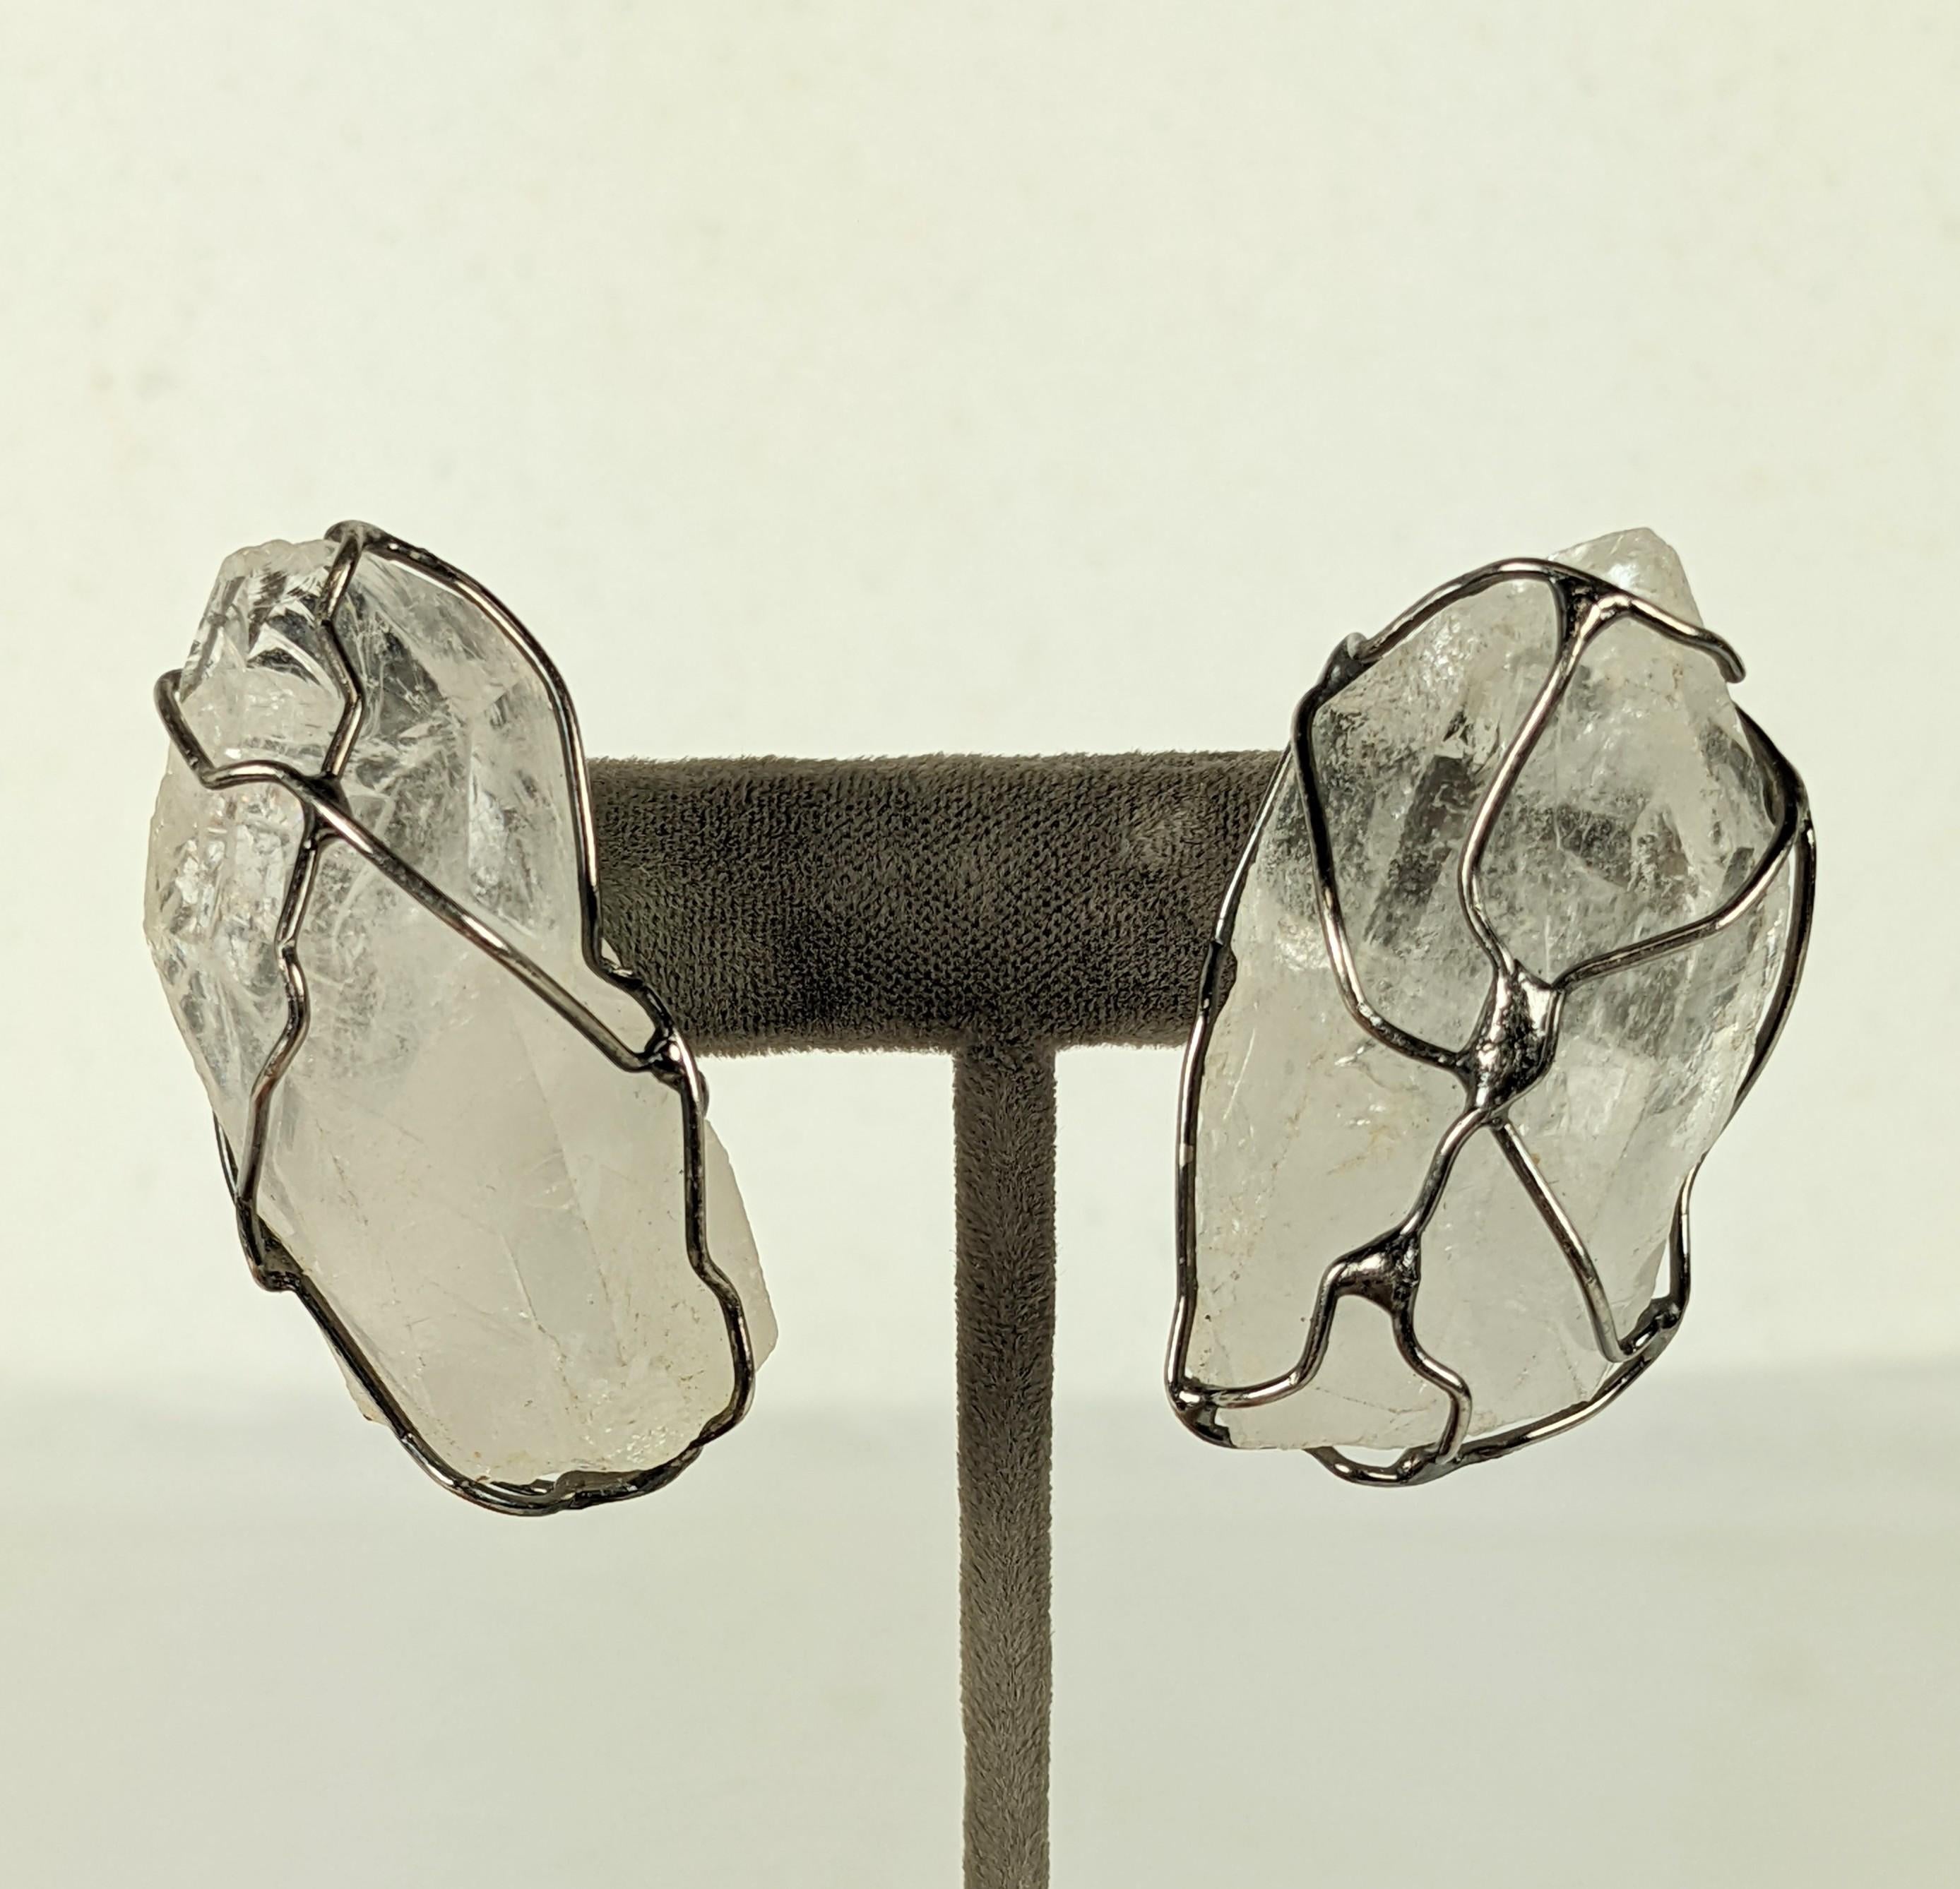 Magnifiques boucles d'oreilles en cristal de roche de la Maison Goossens pour Yves Saint Laurent datant de la fin des années 1980. De grands cristaux de roche naturels sont encagés dans un fil argenté patiné pour former cet incroyable motif